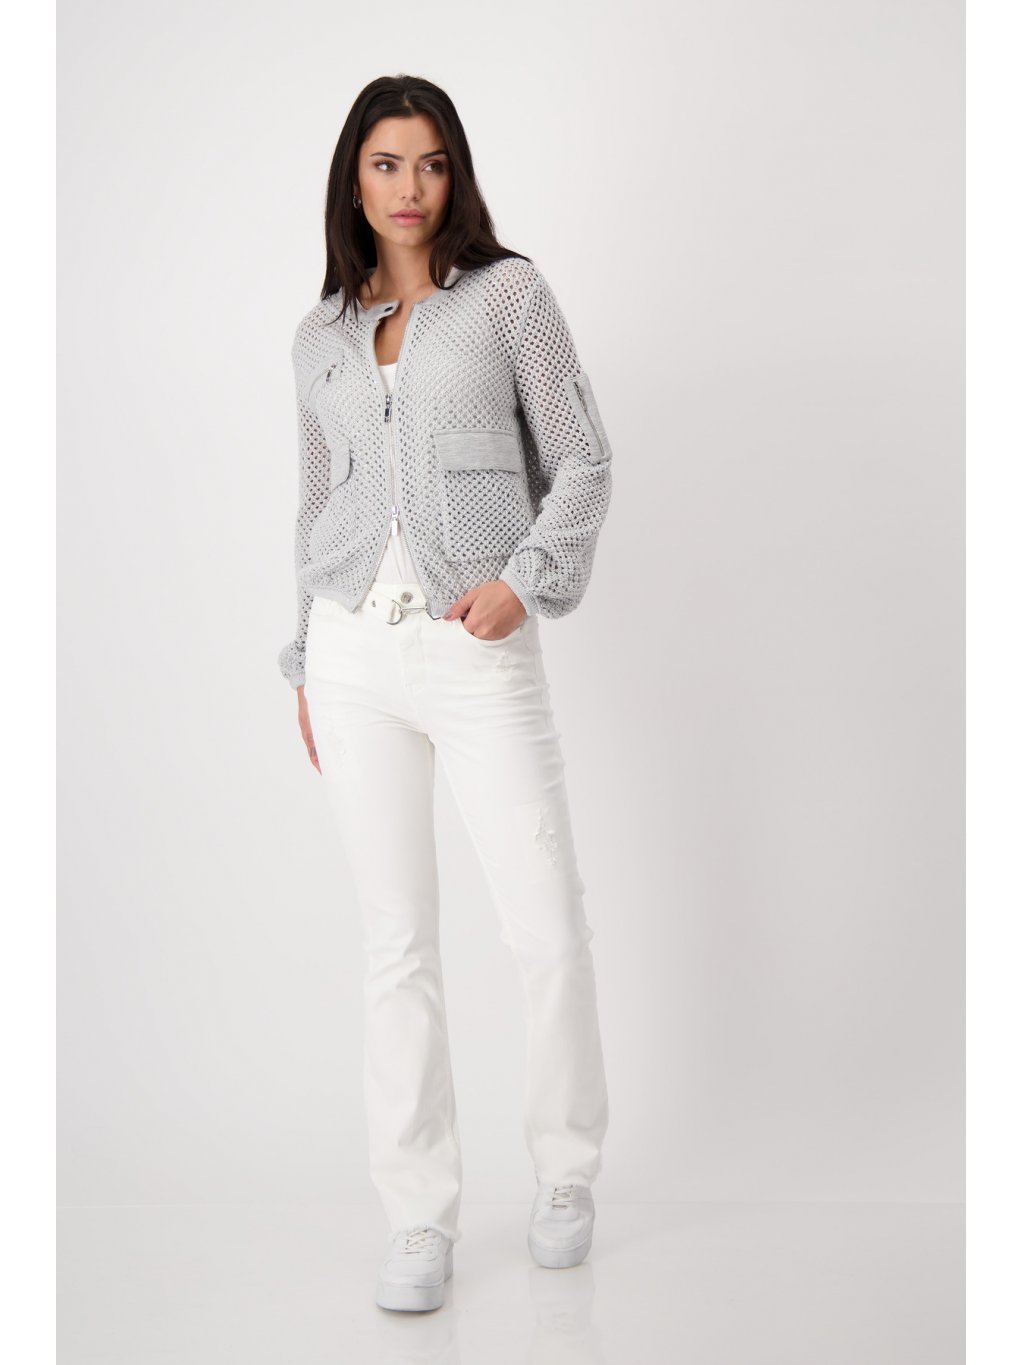 Kalhoty Monari 8306 bílé džíny do zvonu s opaskem